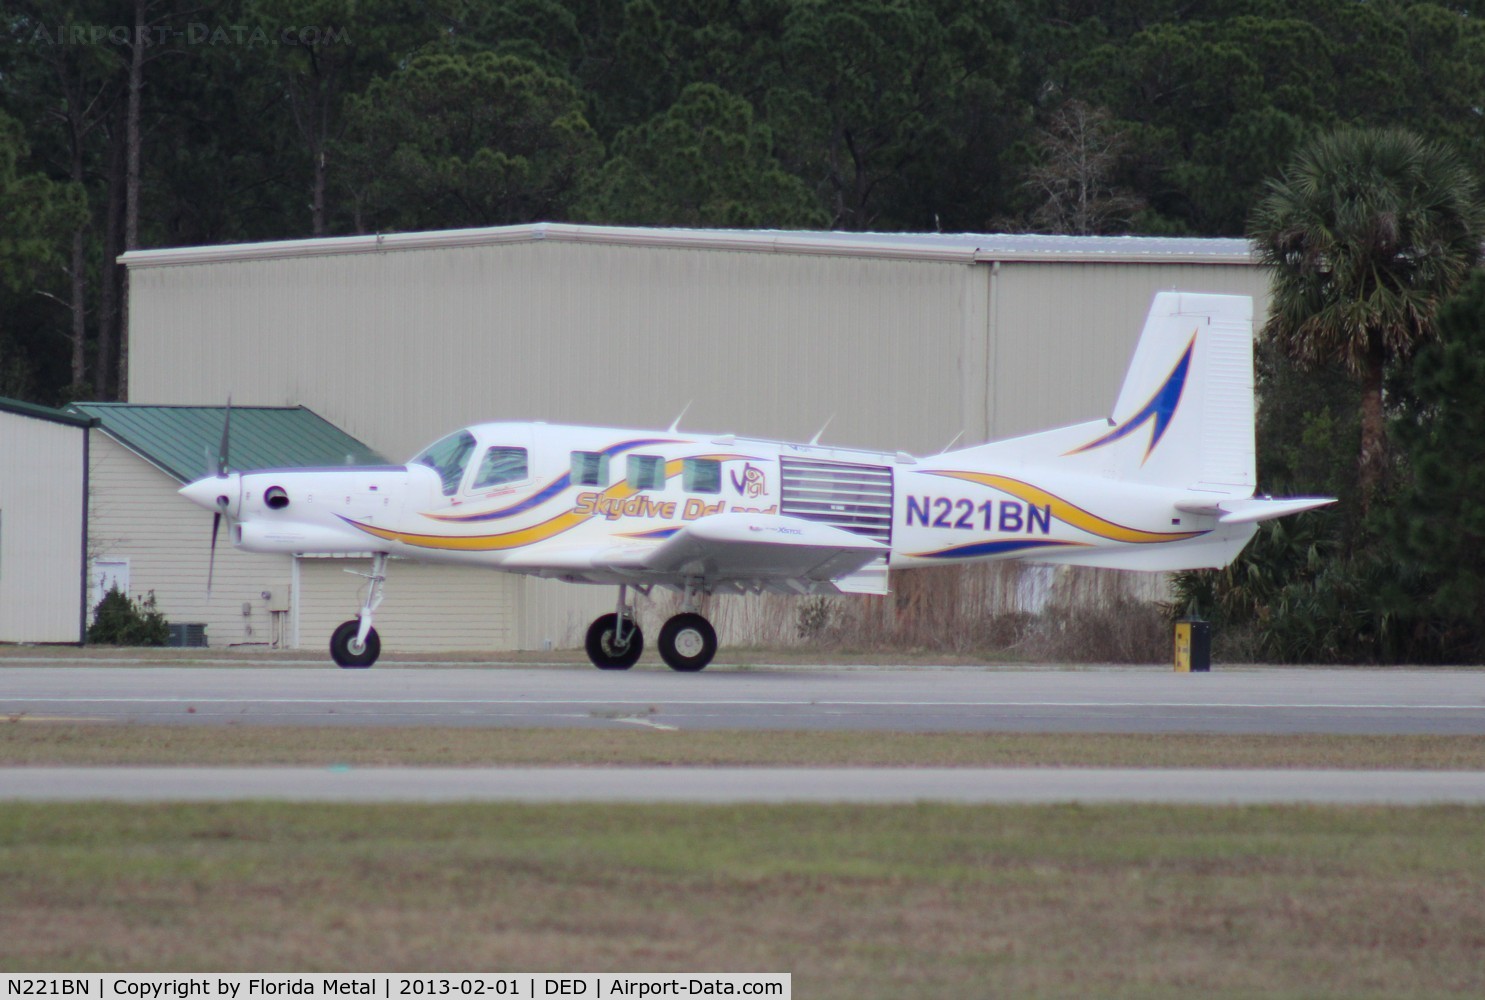 N221BN, 2010 Pacific Aerospace 750XL C/N 165, Skydive Deland 750XL